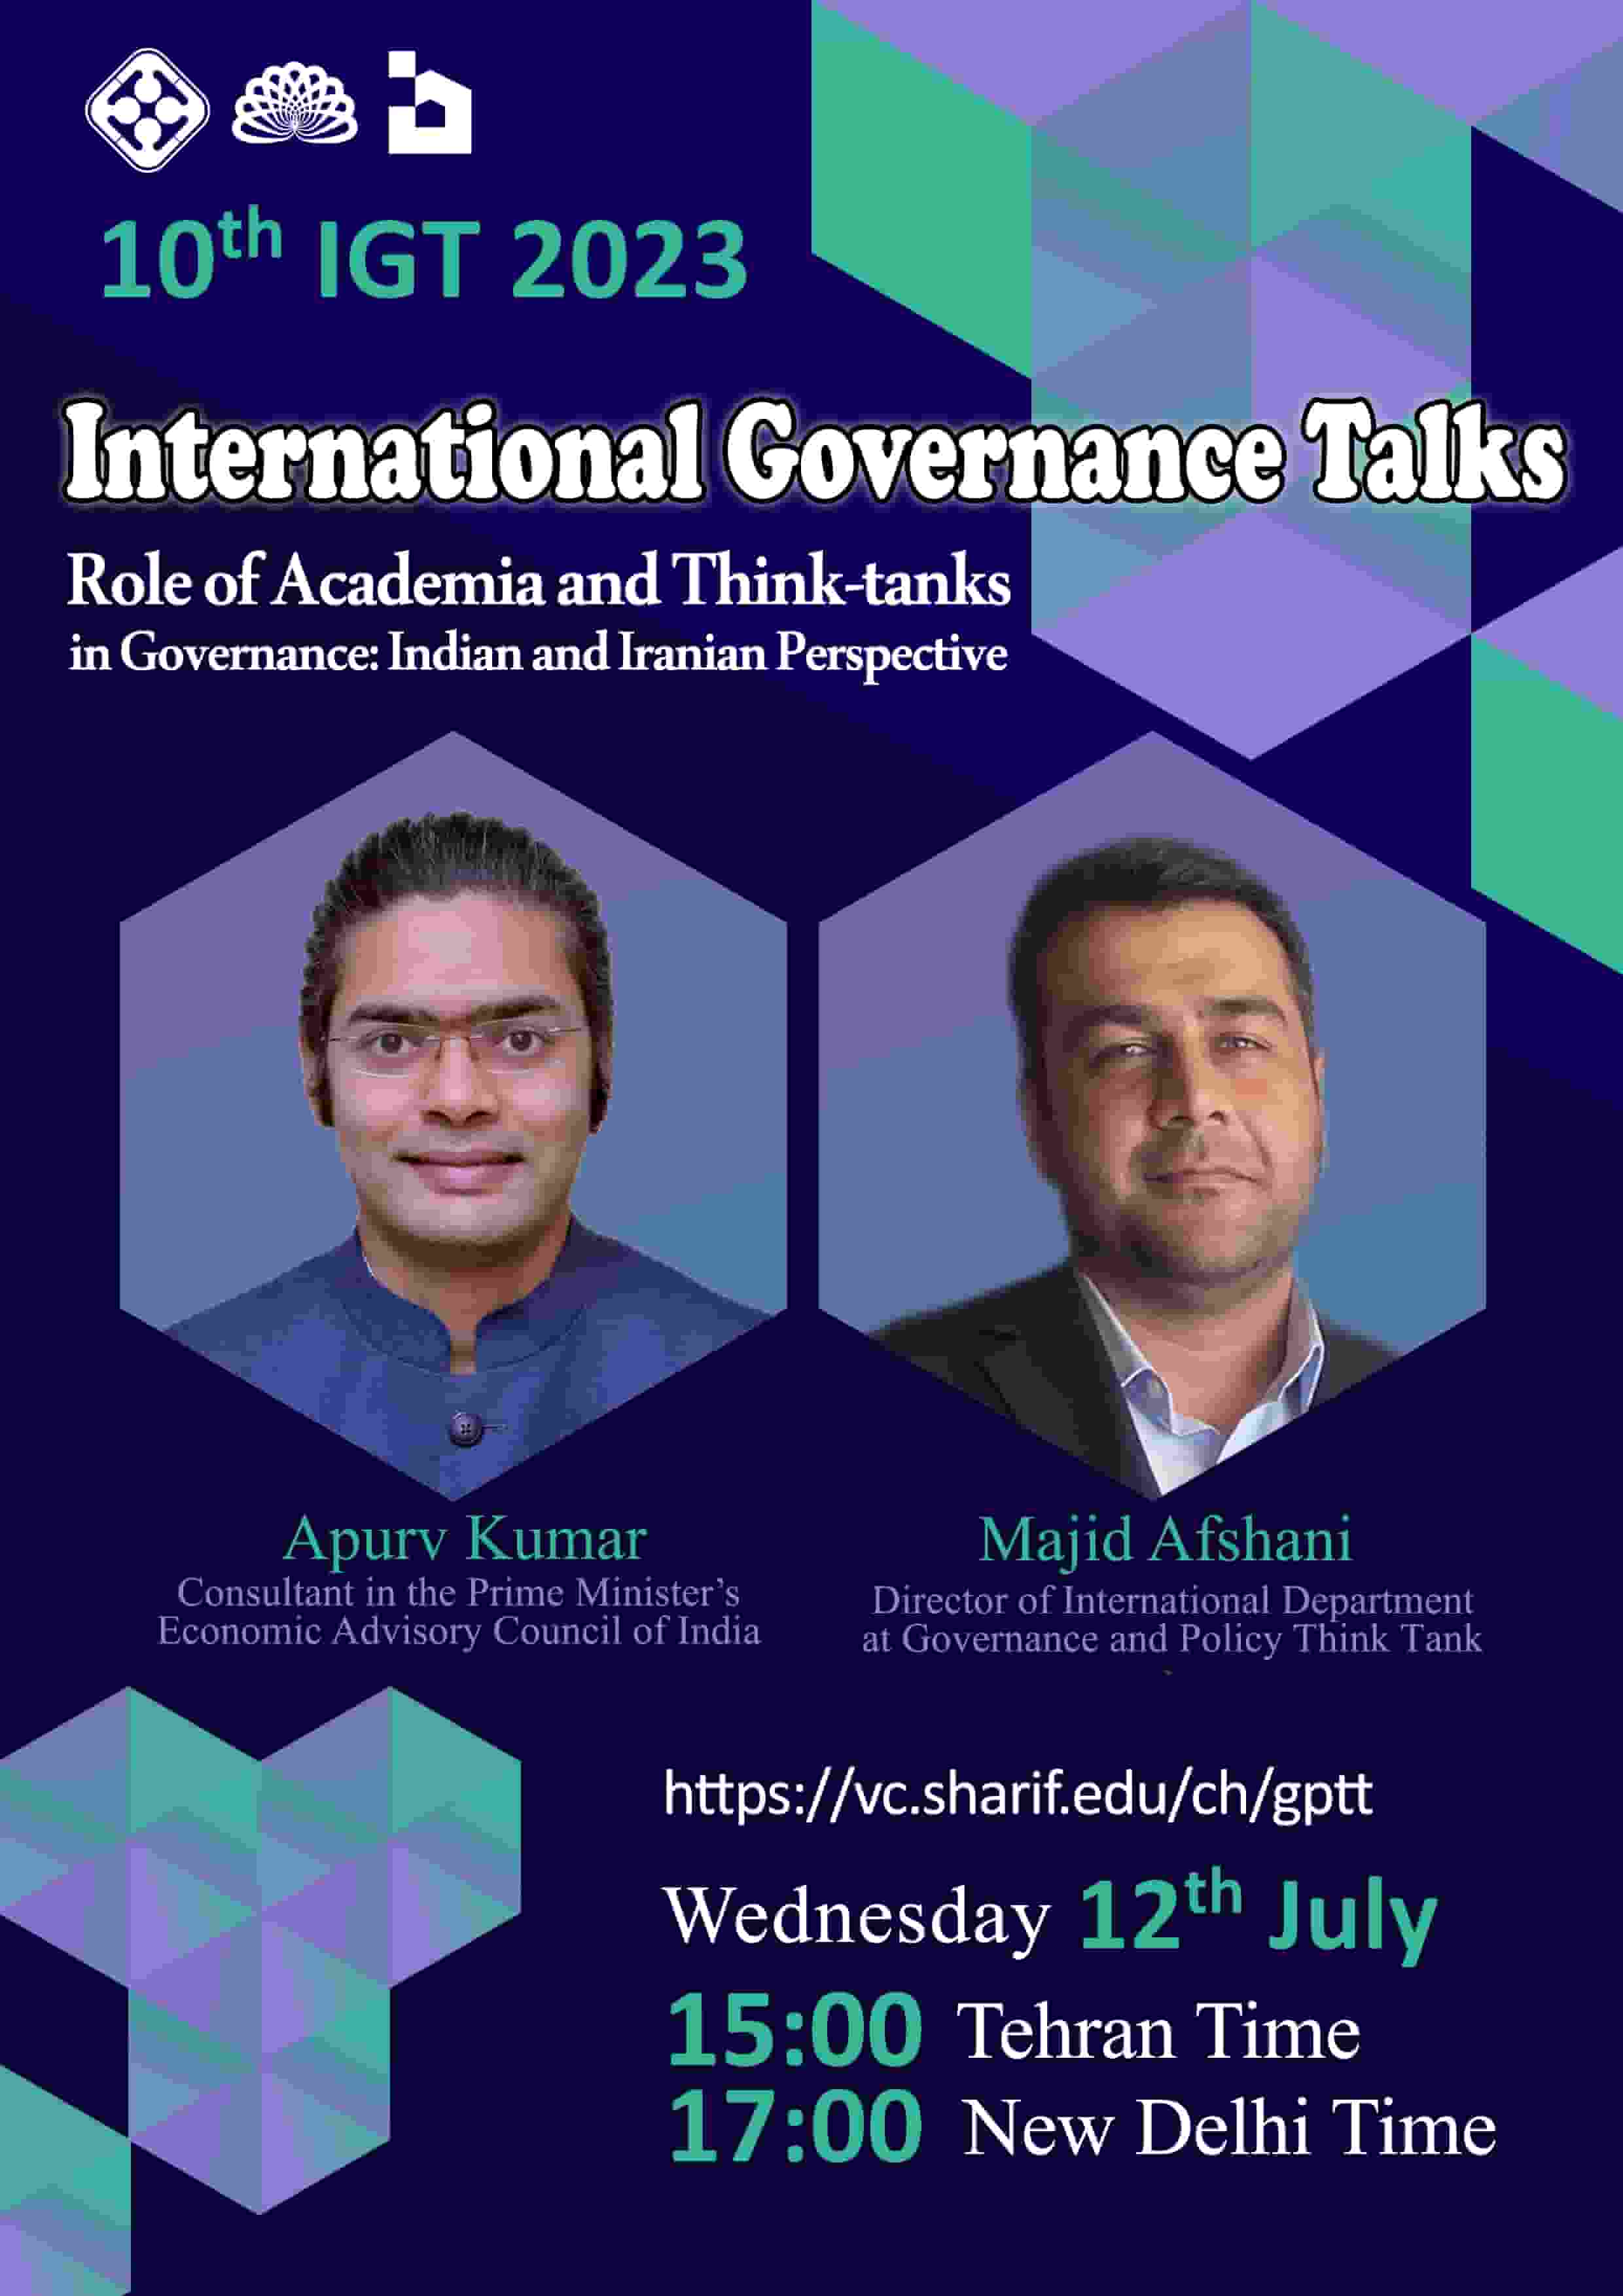 نقش دانشگاه و اندیشکده ها در حکمرانی؛ بررسی موردی هند و ایران